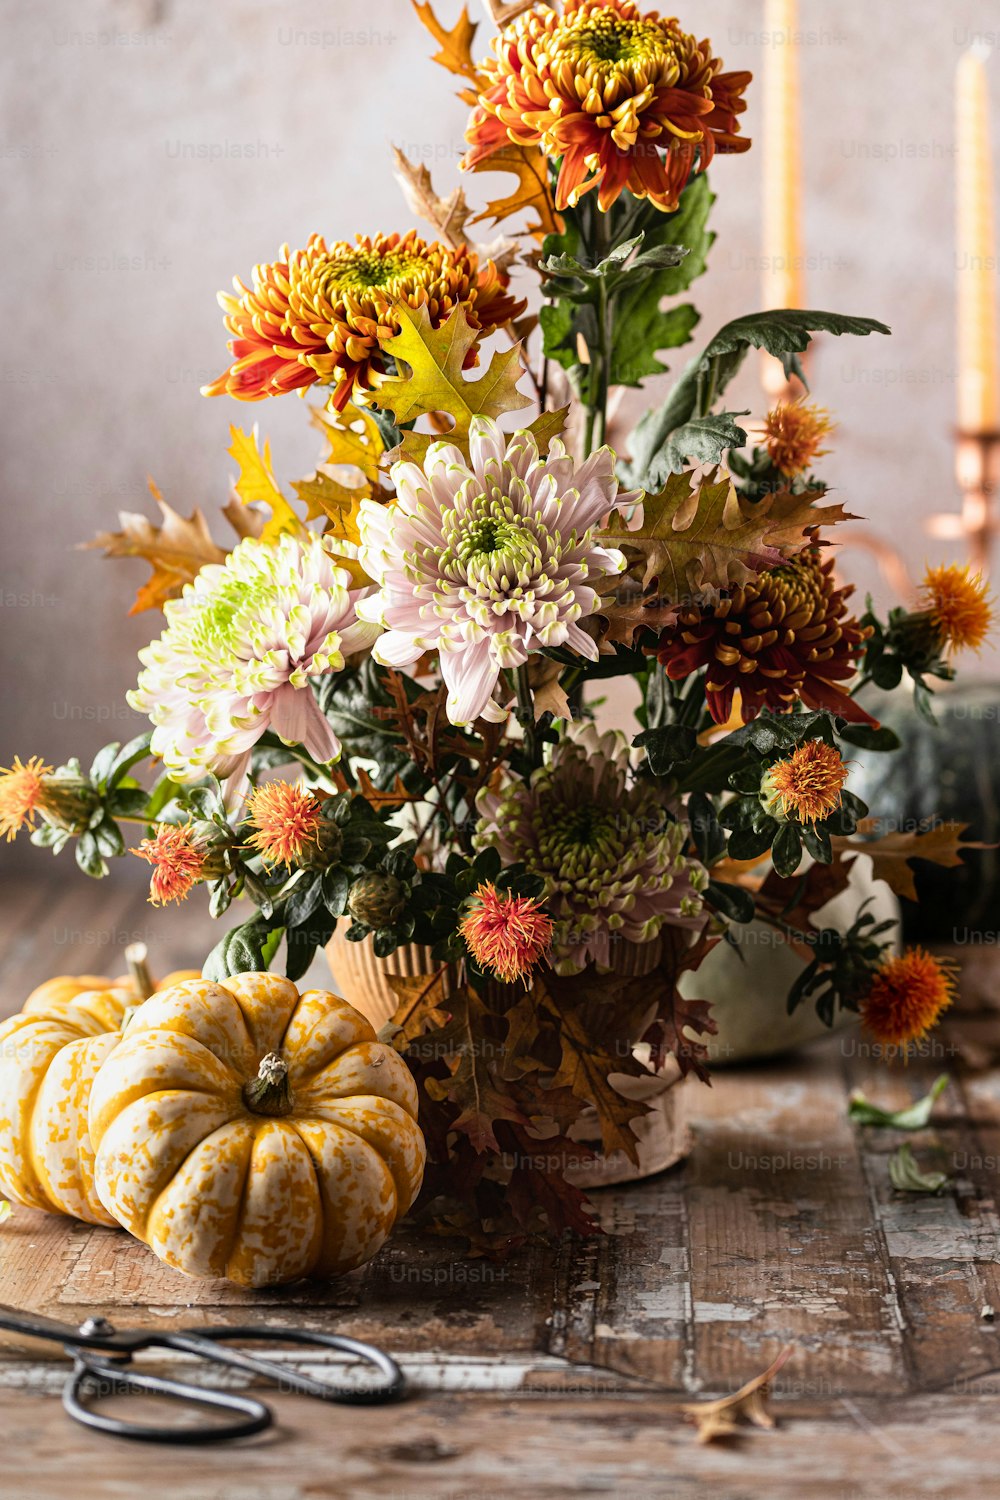 eine Vase gefüllt mit vielen Blumen neben einer Schere